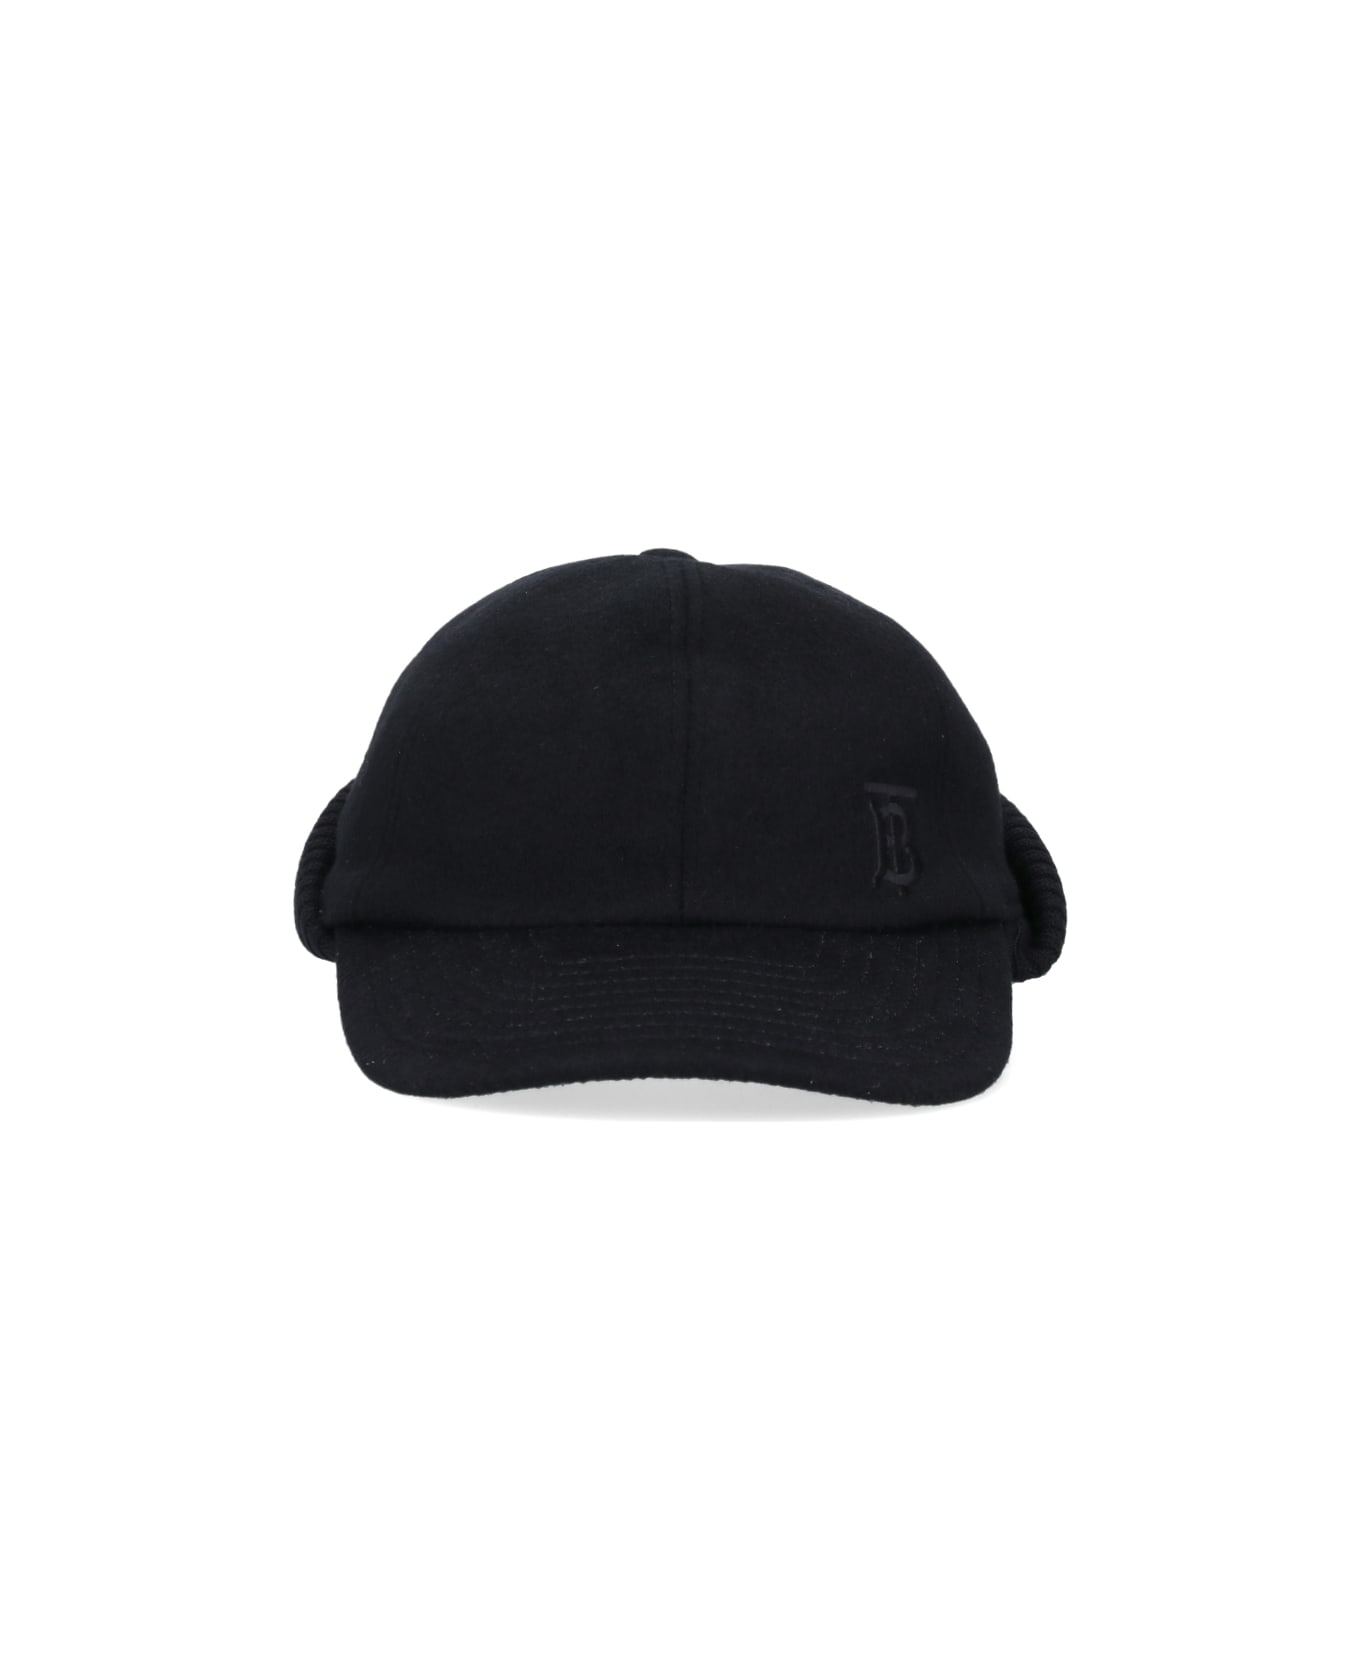 Burberry Hat - Black 帽子